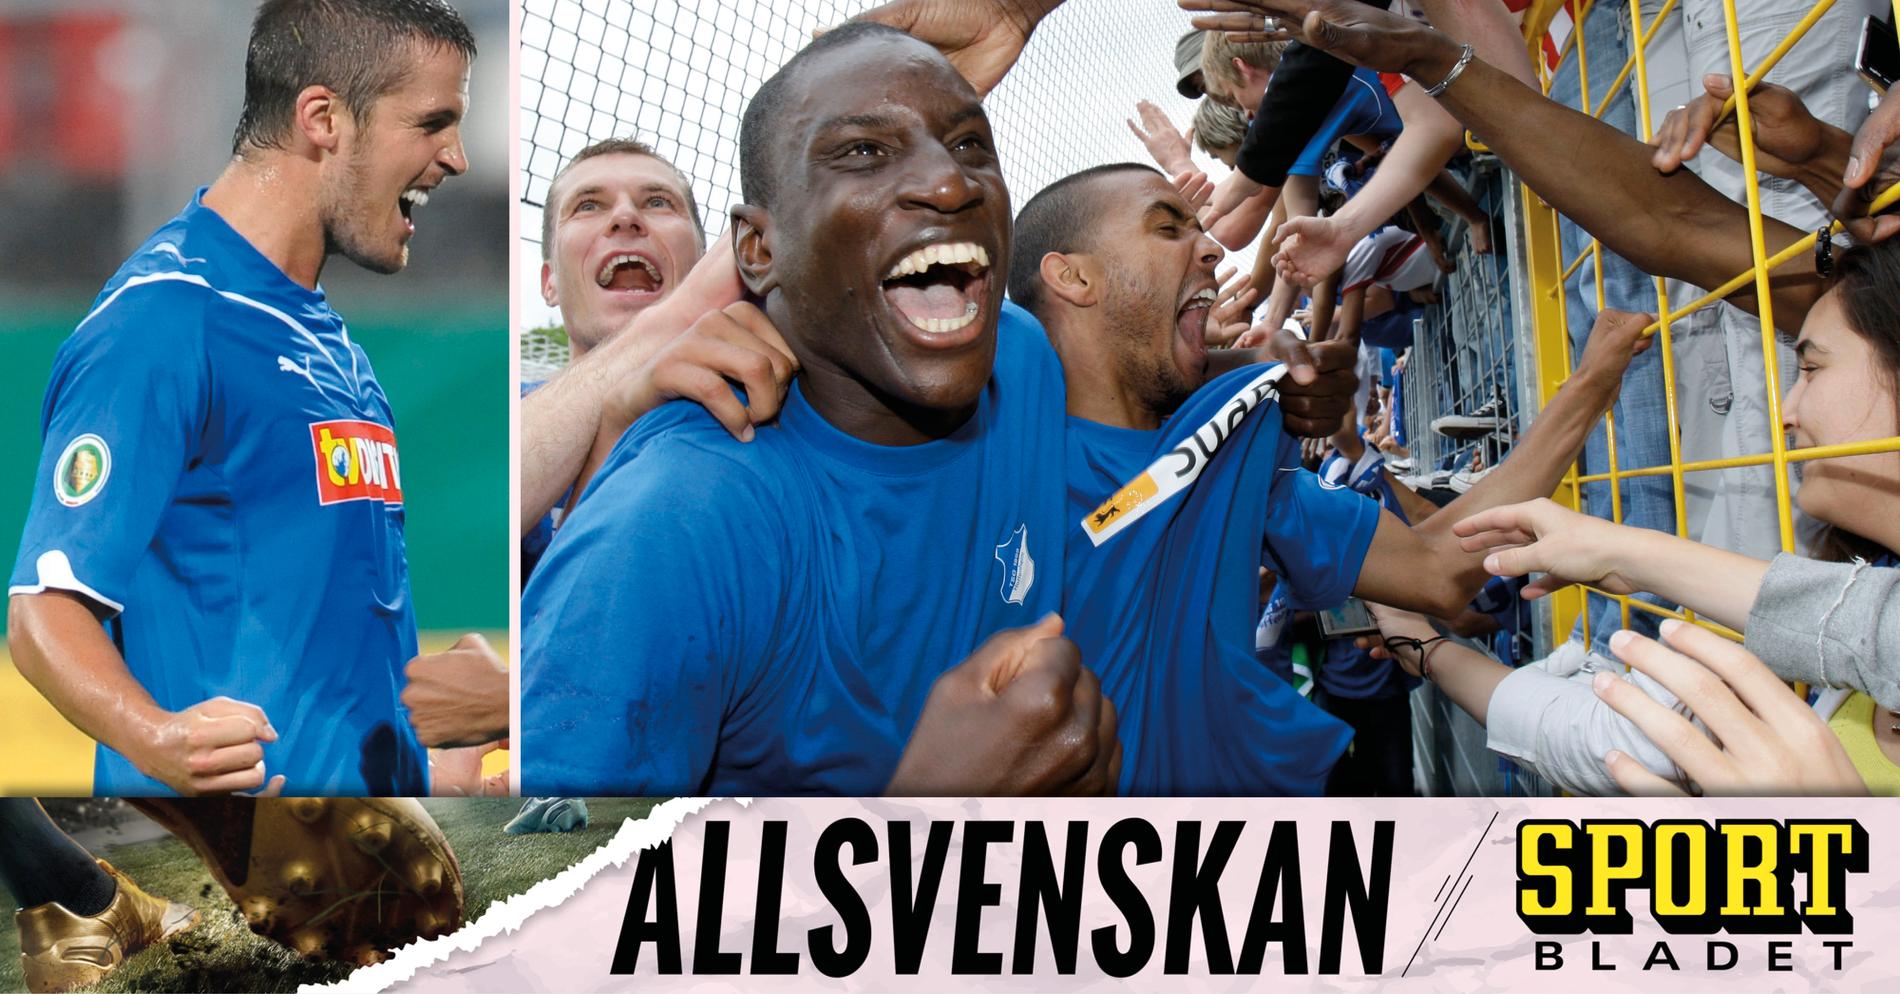 Träningen: Köra över korplag • Podden Sportbladet Allsvenskan med nytt avsnitt